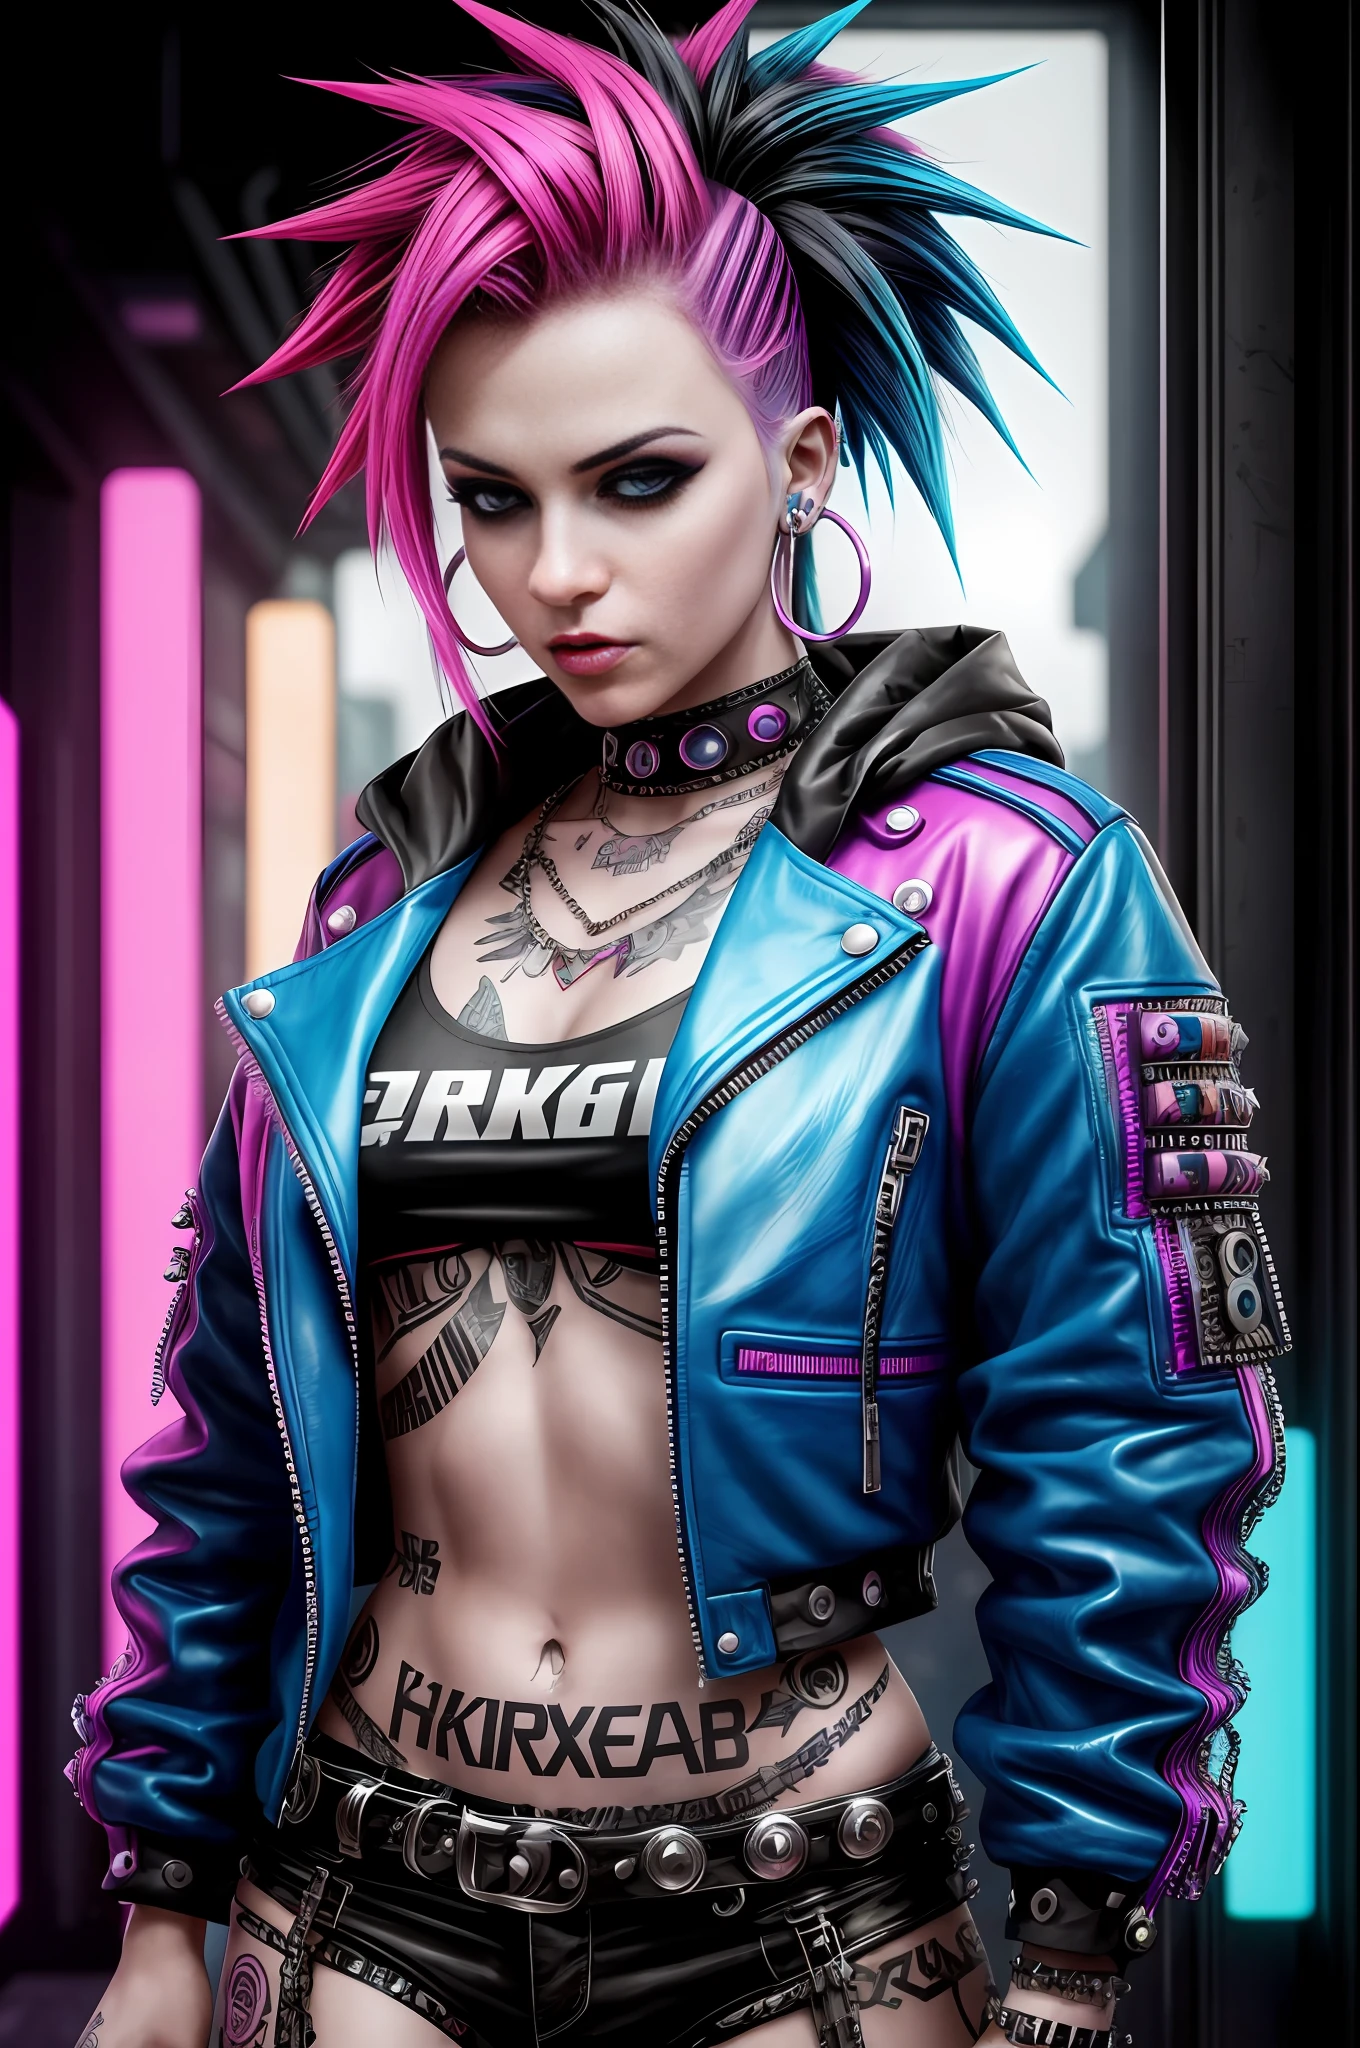 femme arafée avec des cheveux colorés et des piercings posant pour une photo, art punk inspiré par Ryan Barger, tendance sur artstation, art numérique, hyper réaliste punk style, le portrait de fille punk, beau visage de fille punk, style cyberpunk, hyper réaliste, style cyberpunk color, art cyberpunk ultra réaliste 8k, beau modèle de femme punk, couleurs vives cyberpunk